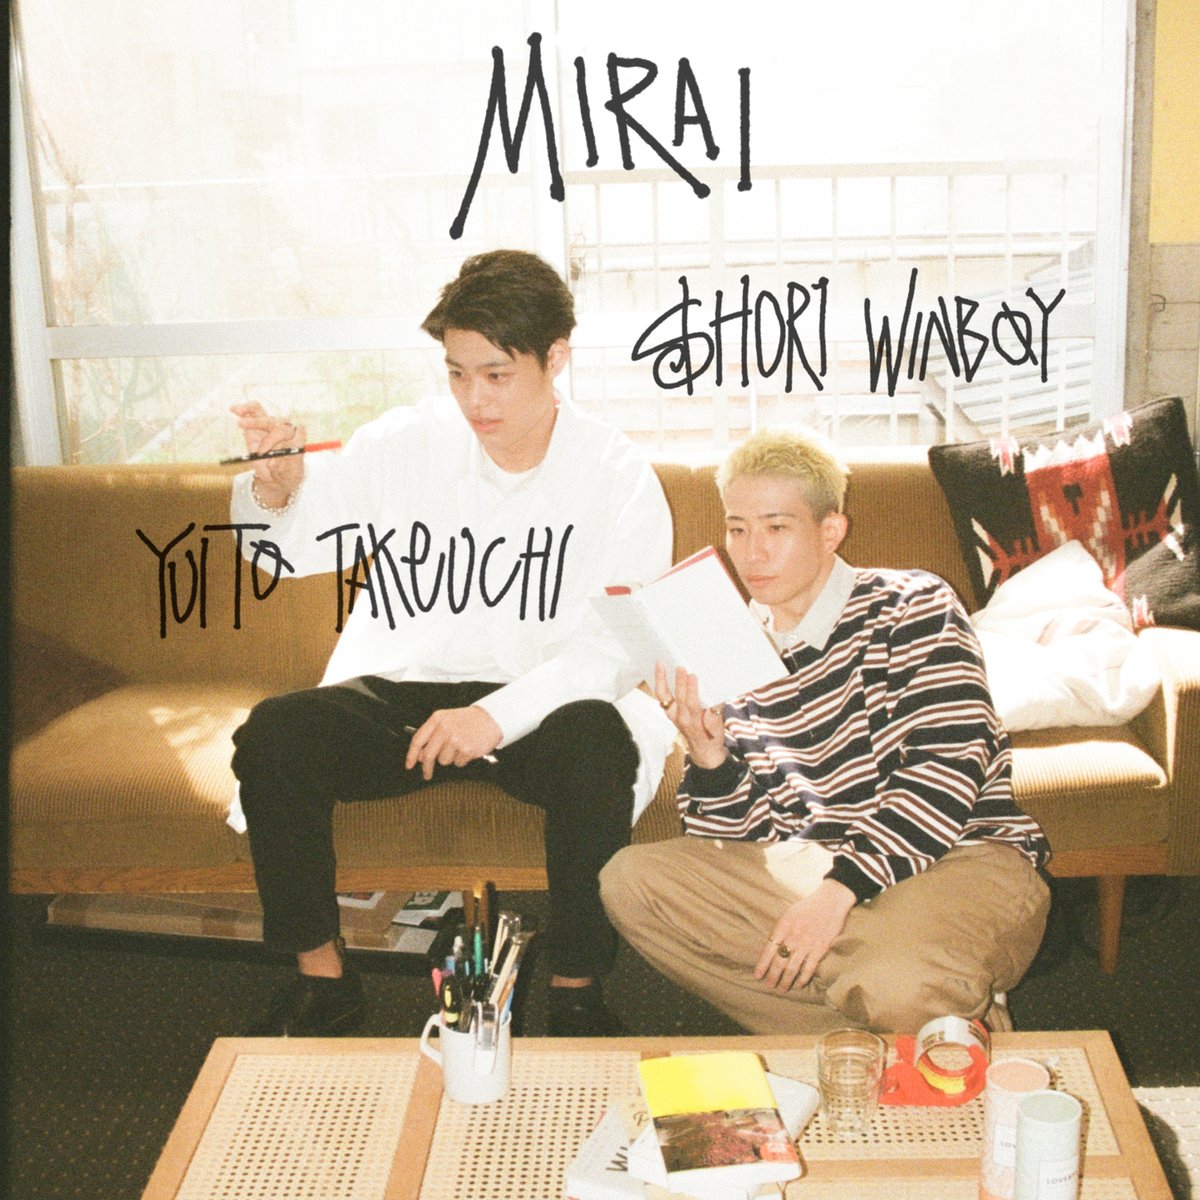 『竹内唯人 - MIRAI (feat. $HOR1 WINBOY) 歌詞』収録の『MIRAI (feat. $HOR1 WINBOY)』ジャケット